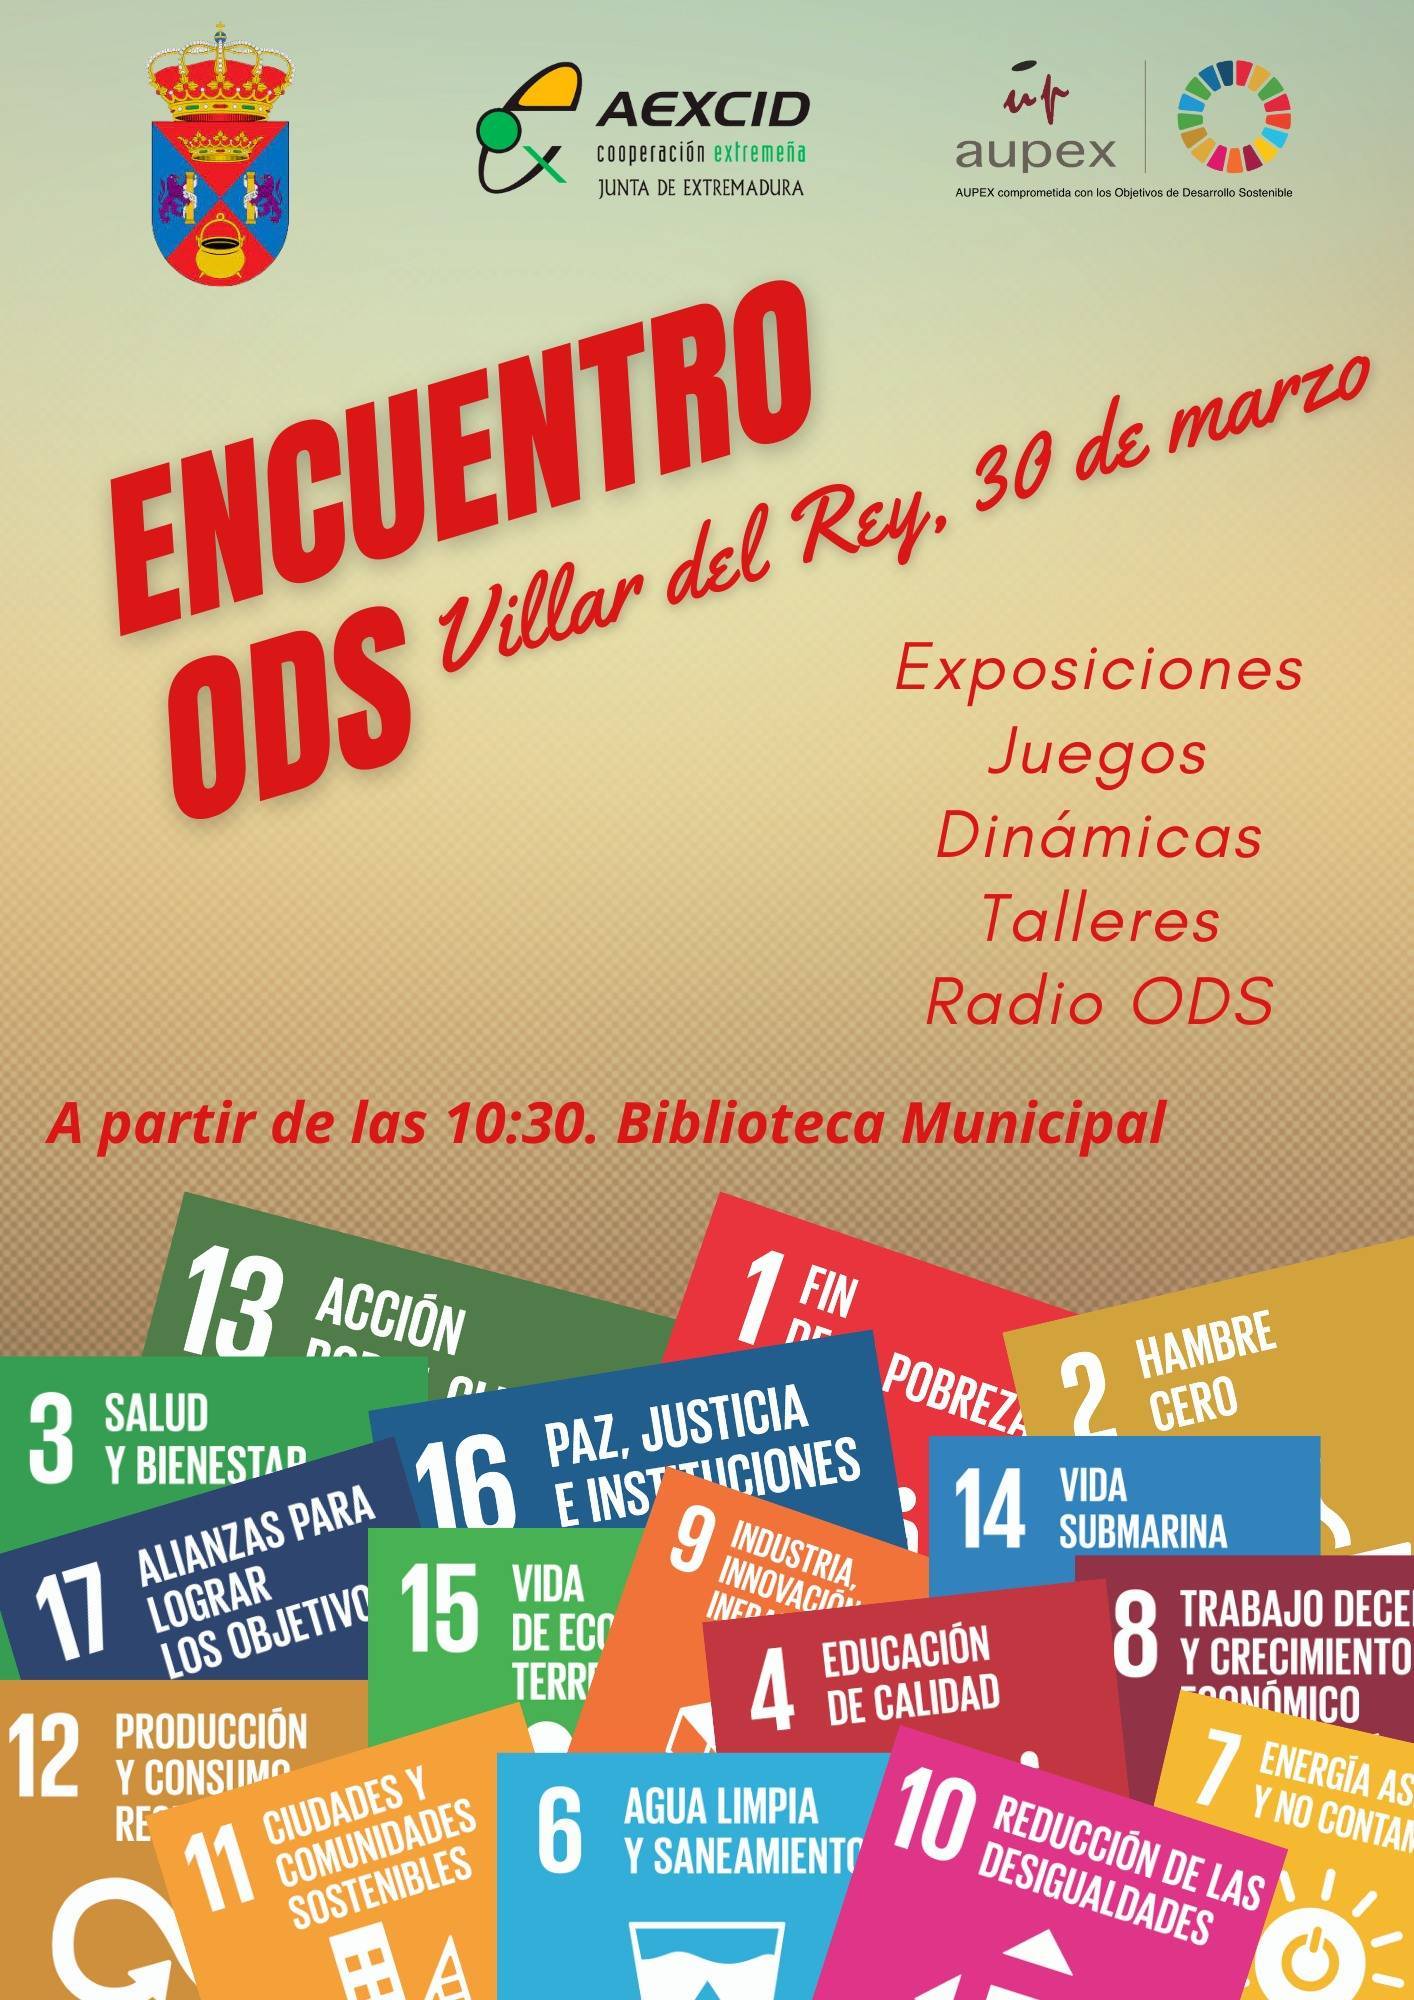 Encuentro ODS (2022) - Villar del Rey (Badajoz)